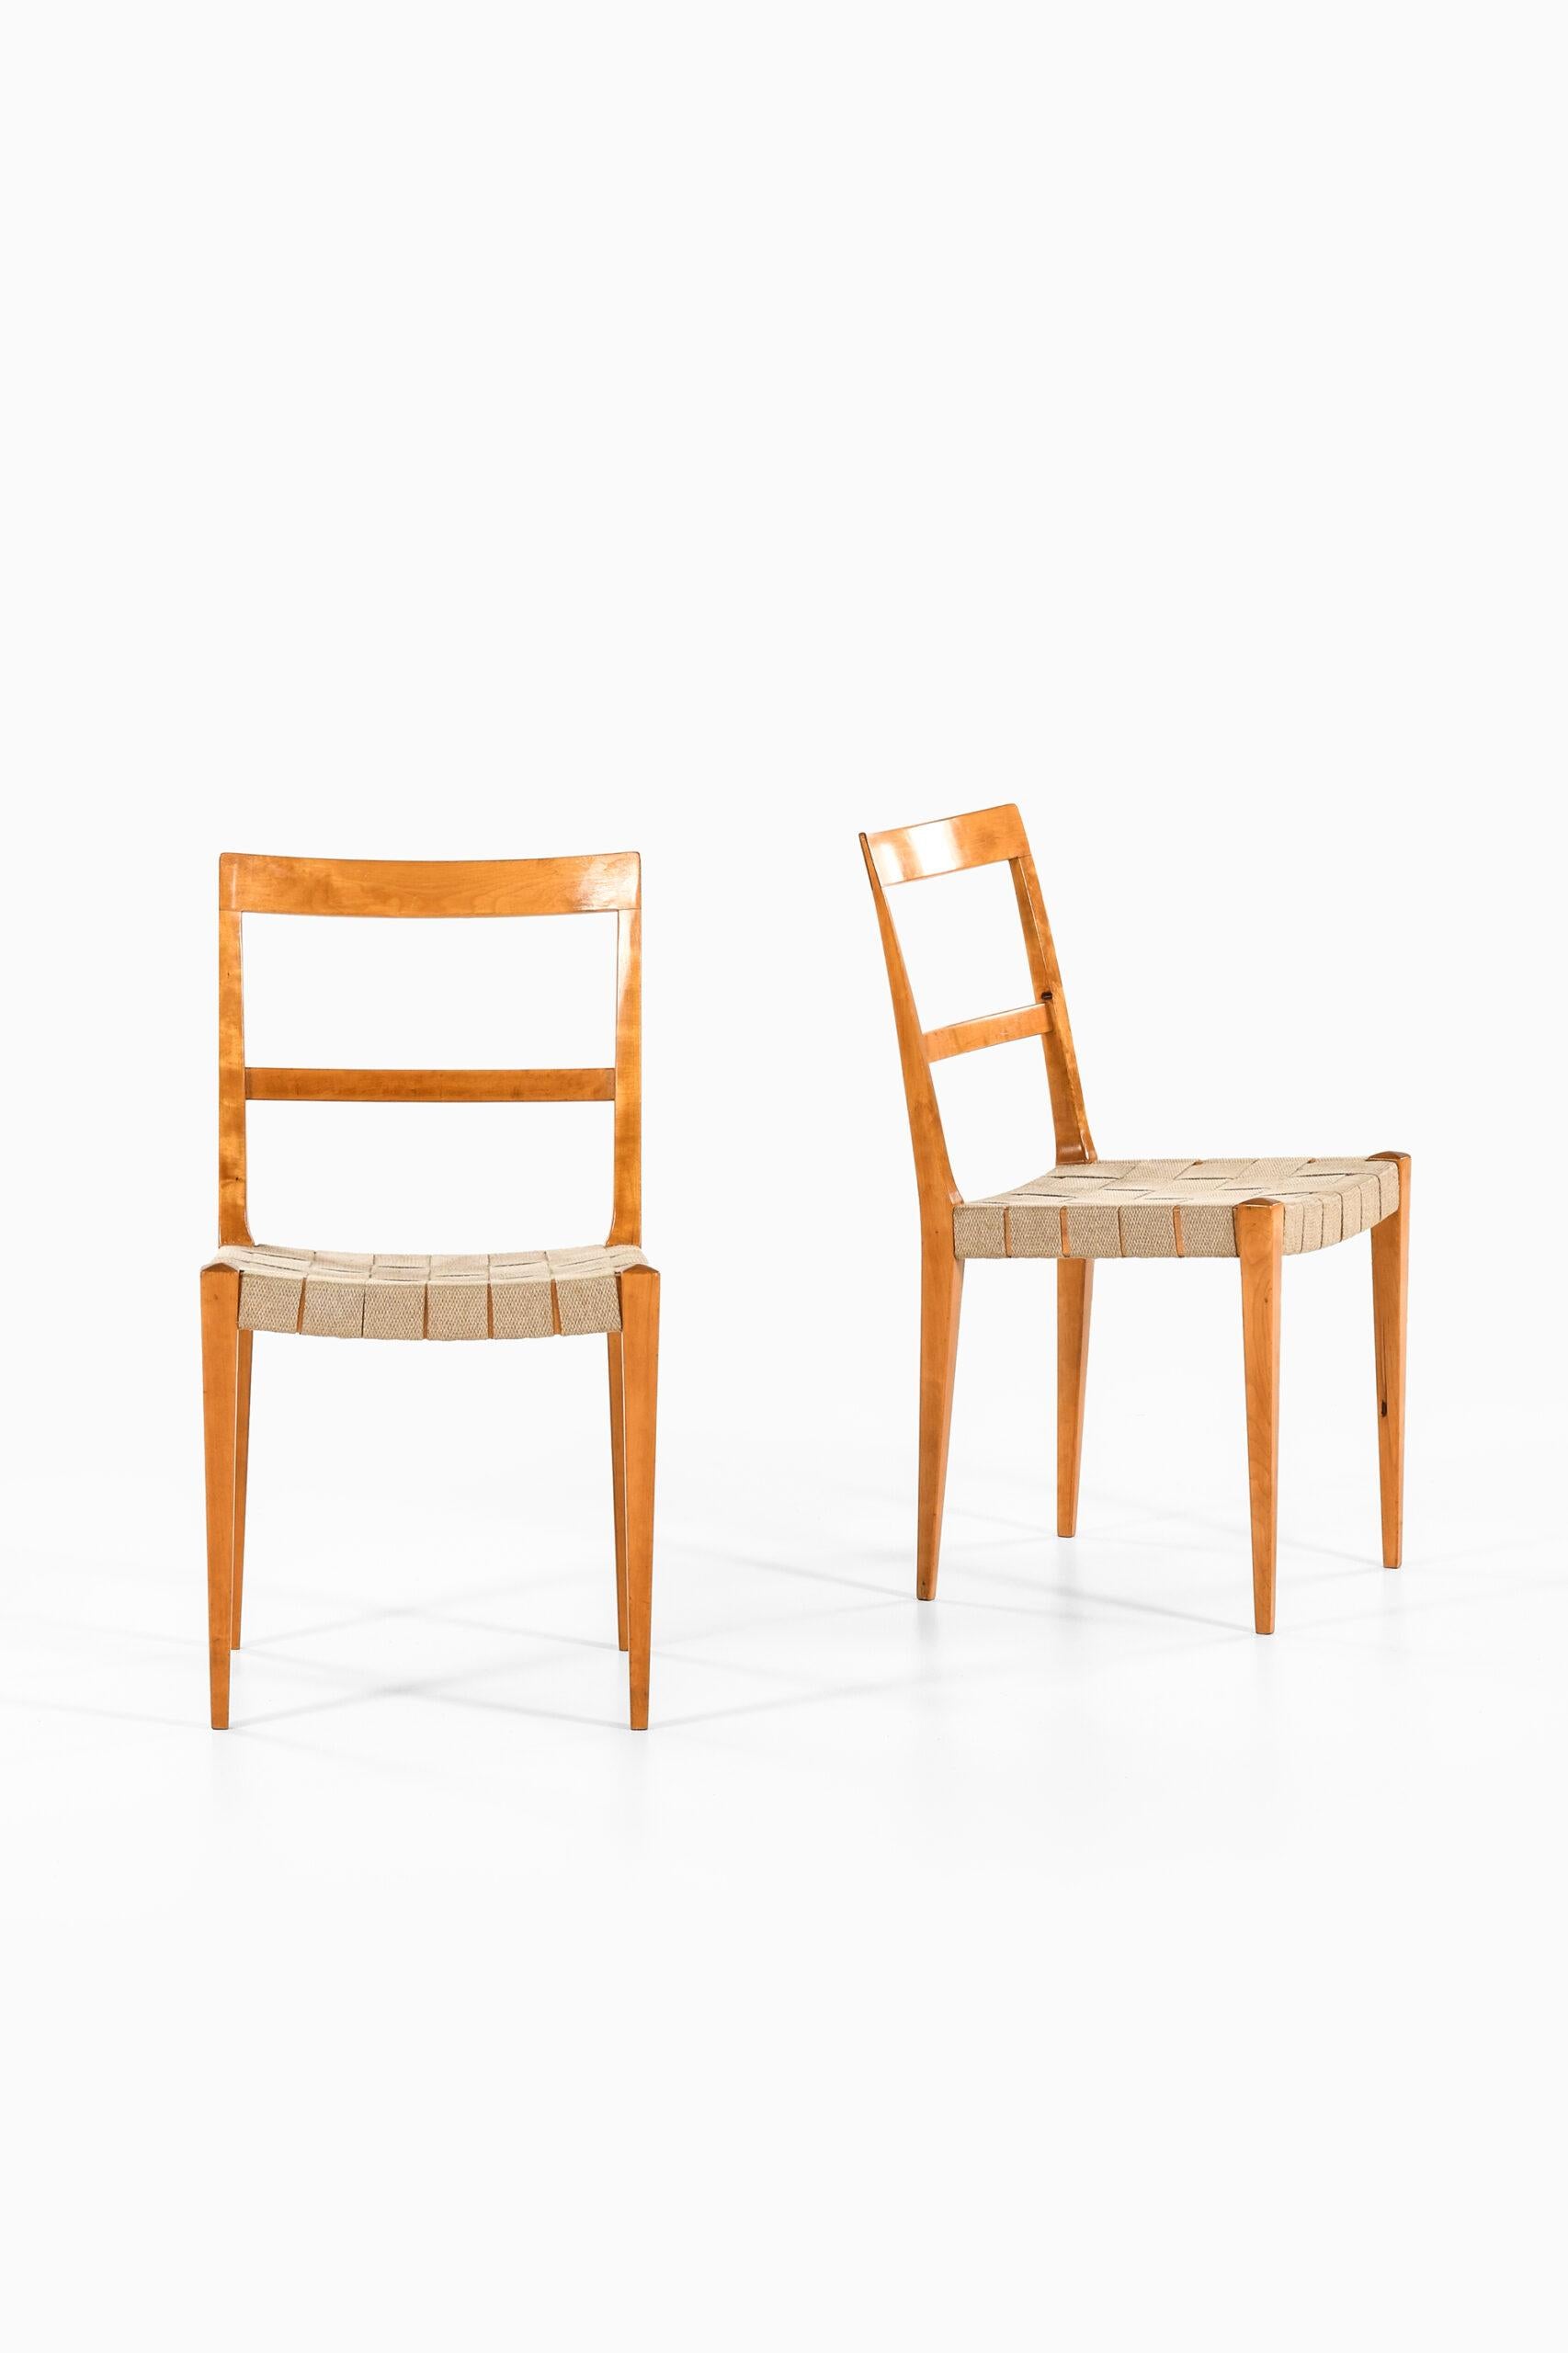 Sehr seltener Satz von 5 Esszimmerstühlen Modell Mimat entworfen von Bruno Mathsson. Produziert von Karl Mathsson in Värnamo, Schweden.